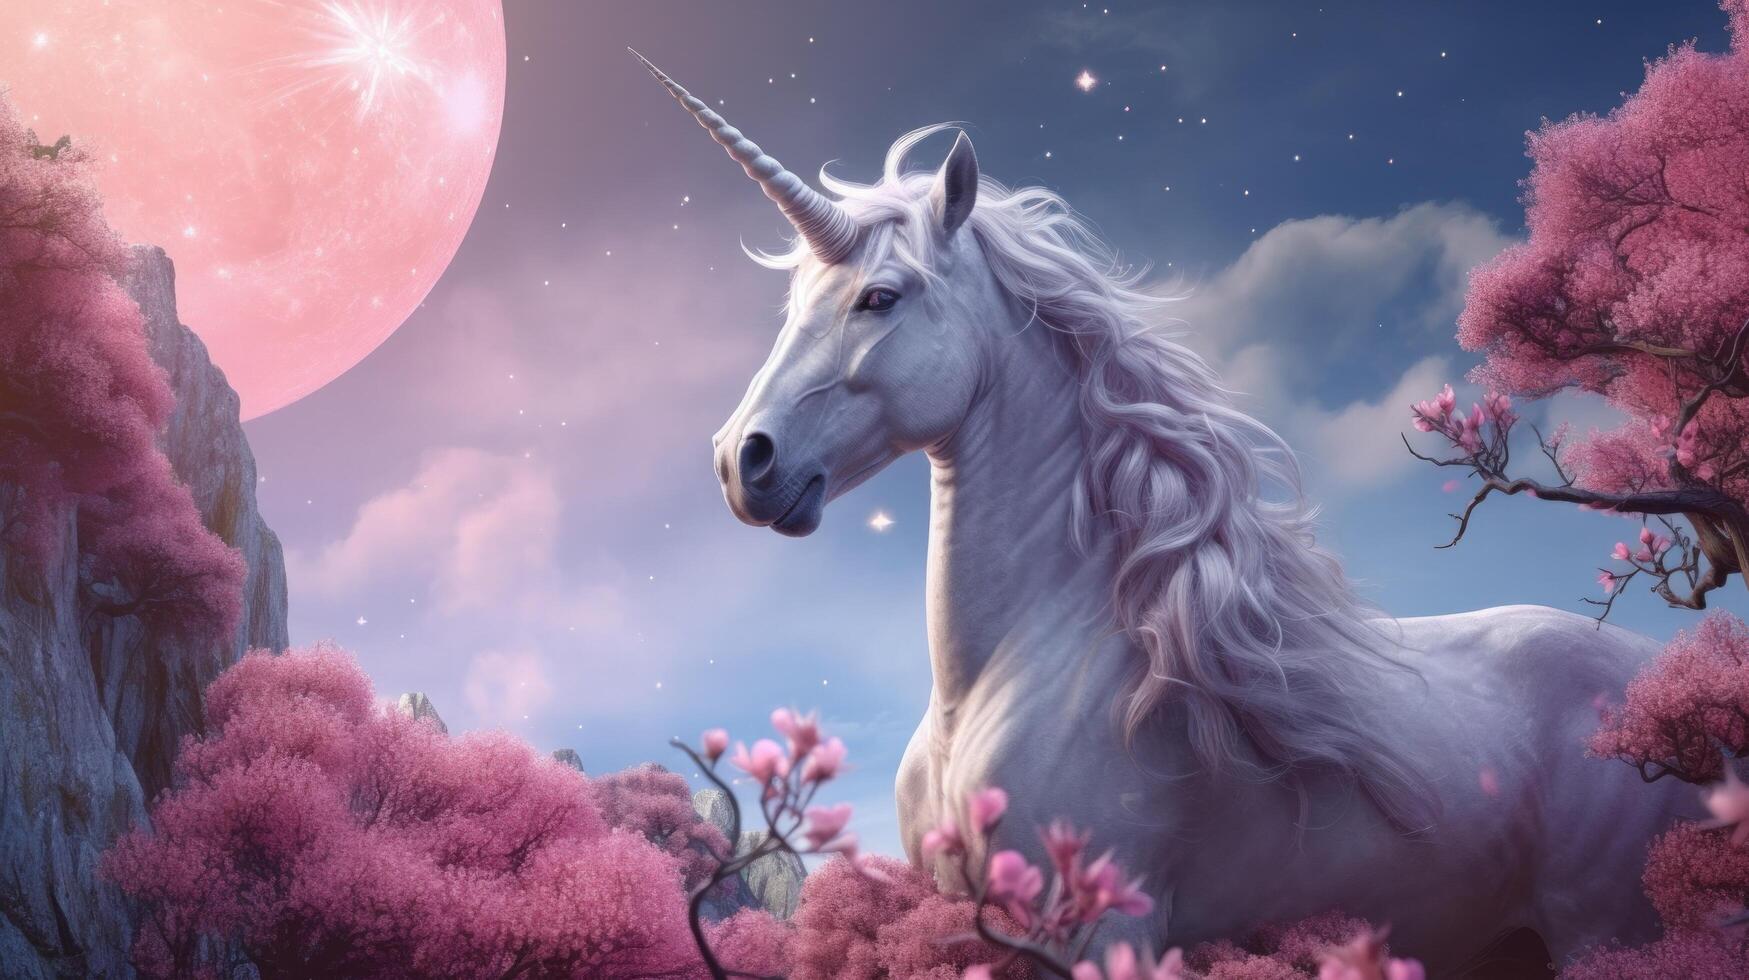 Pink background with unicorn. Illustration photo